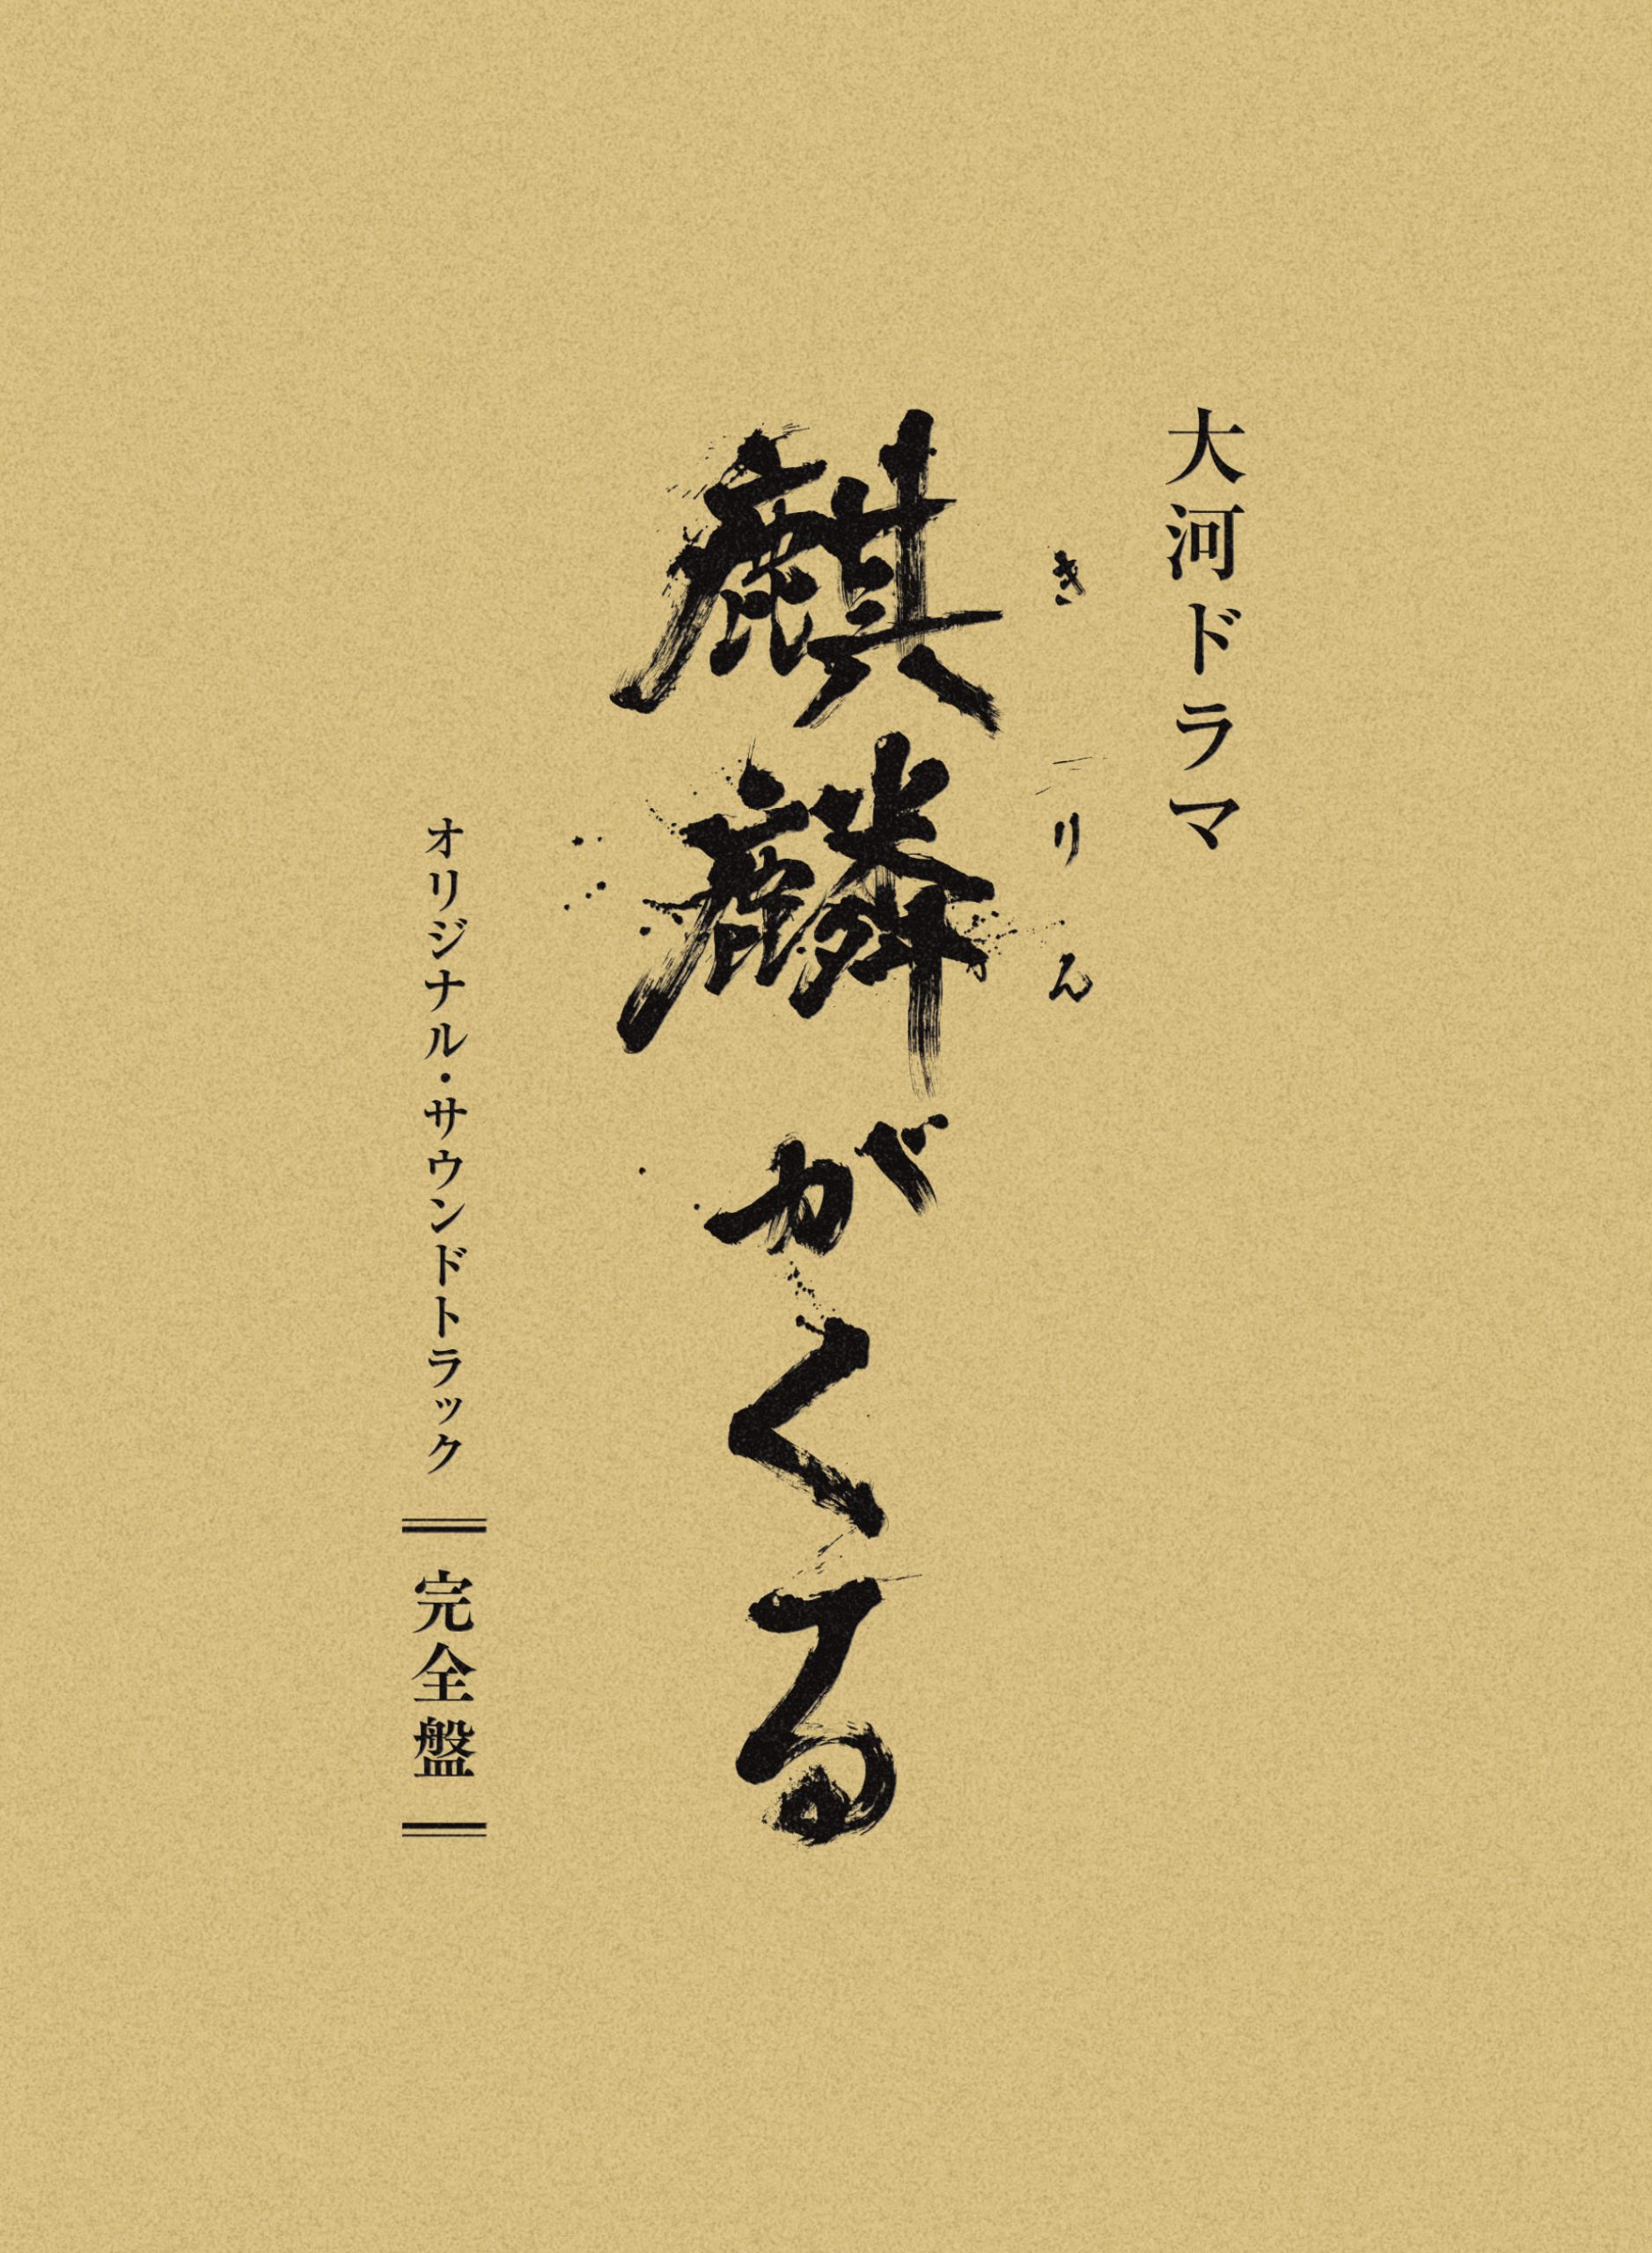 大河ドラマ「麒麟がくる」オリジナル・サウンドトラック 完全盤 